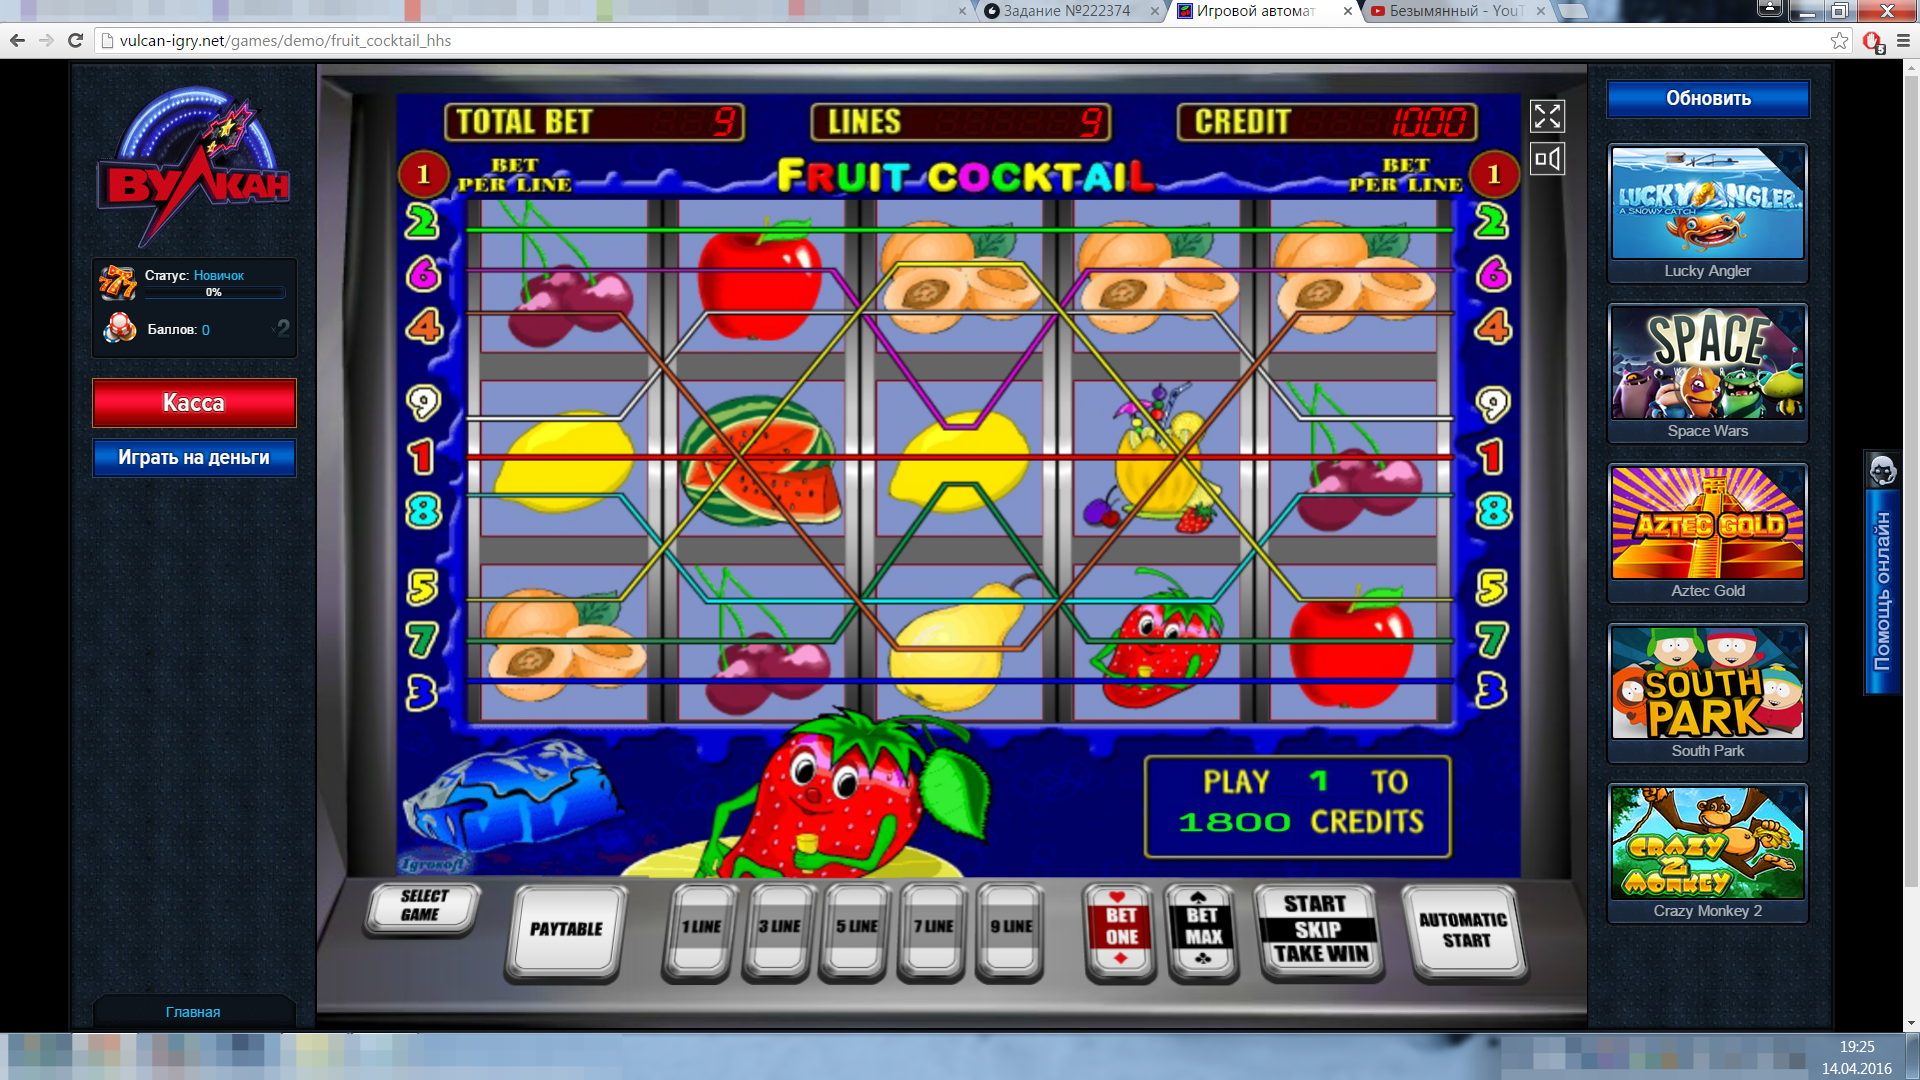 Эмулятор вулкан игровых автоматов играть бесплатно без регистрации подготовка ограбления казино в гта 5 онлайн